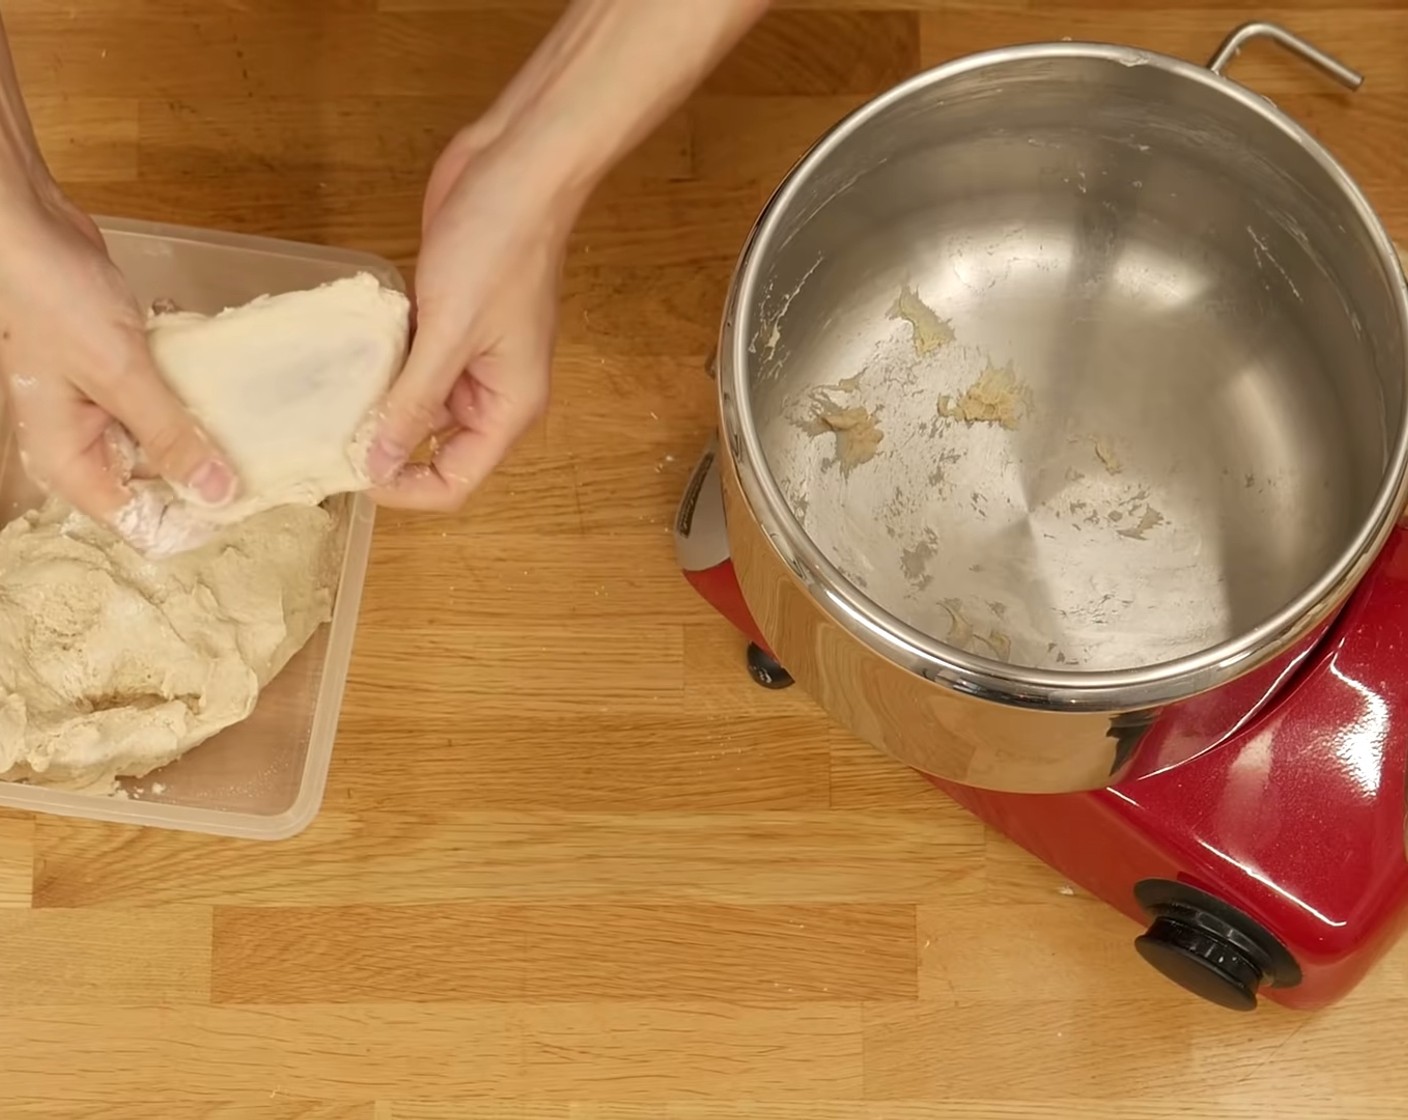 Schritt 2 Die gestampften Kartoffeln mit den restlichen Zutaten; Halbweissmehl (300 g), Ruchmehl (220 g), frische Hefe (4 g), Buttermilch (80 g), Salz (2 Teelöffel) und Wasser (210 g) in die Küchenmaschine geben und auf kleiner Stufe zu einem Teig kneten. Sobald sich langsam ein Teig bildet, das restliche Wasser (50 g) nach und nach dazugeben und weiter kneten bis ein schöner Teig entsteht, der die Fensterprobe besteht.